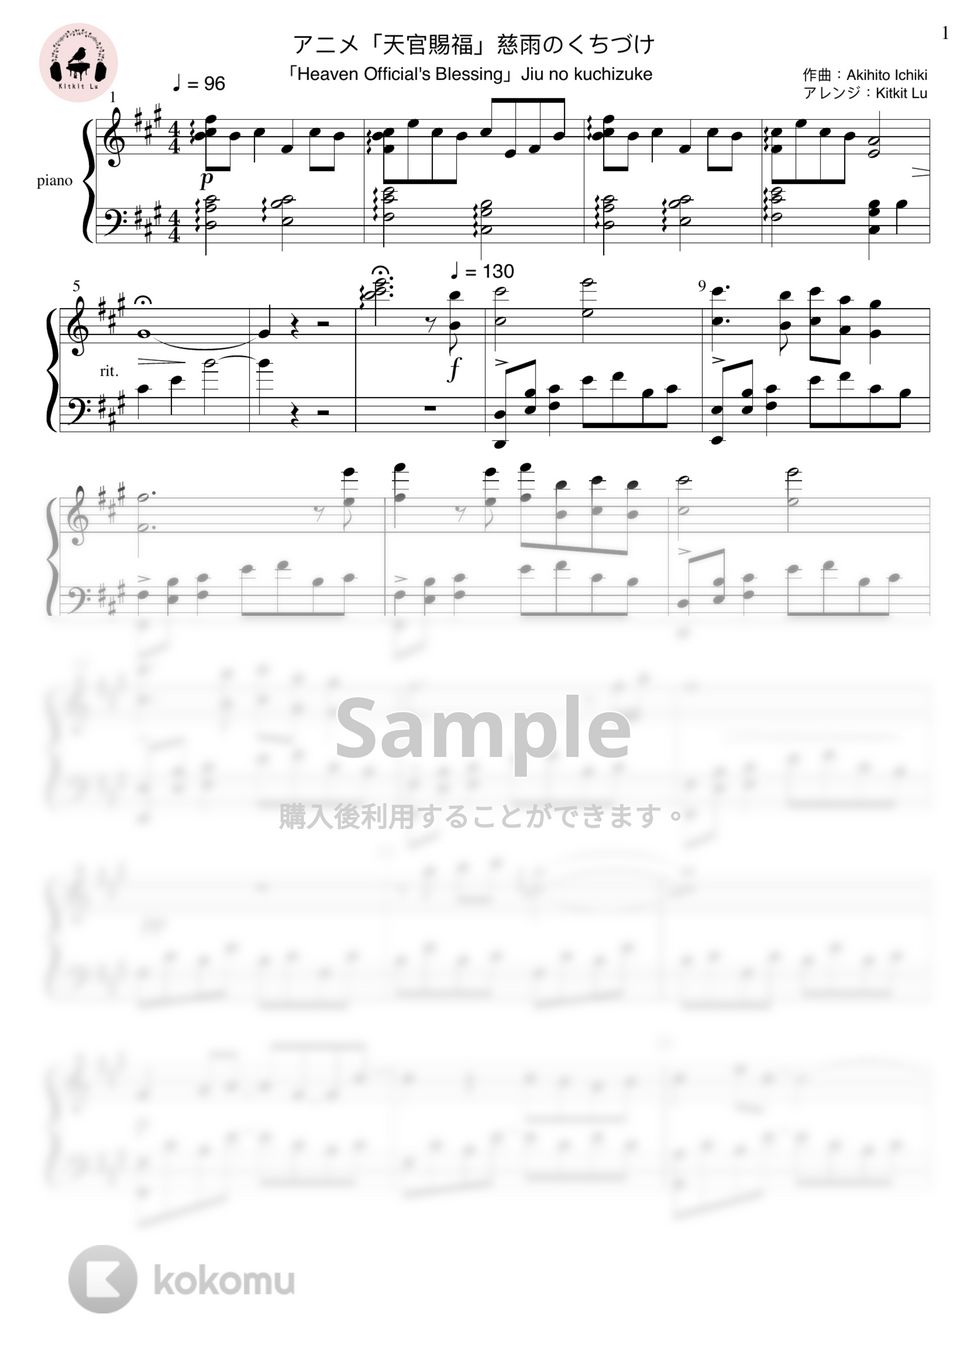 Akihito Ichiki - 慈雨のくちづけ (ピアノソロ) by Kitkit Lu